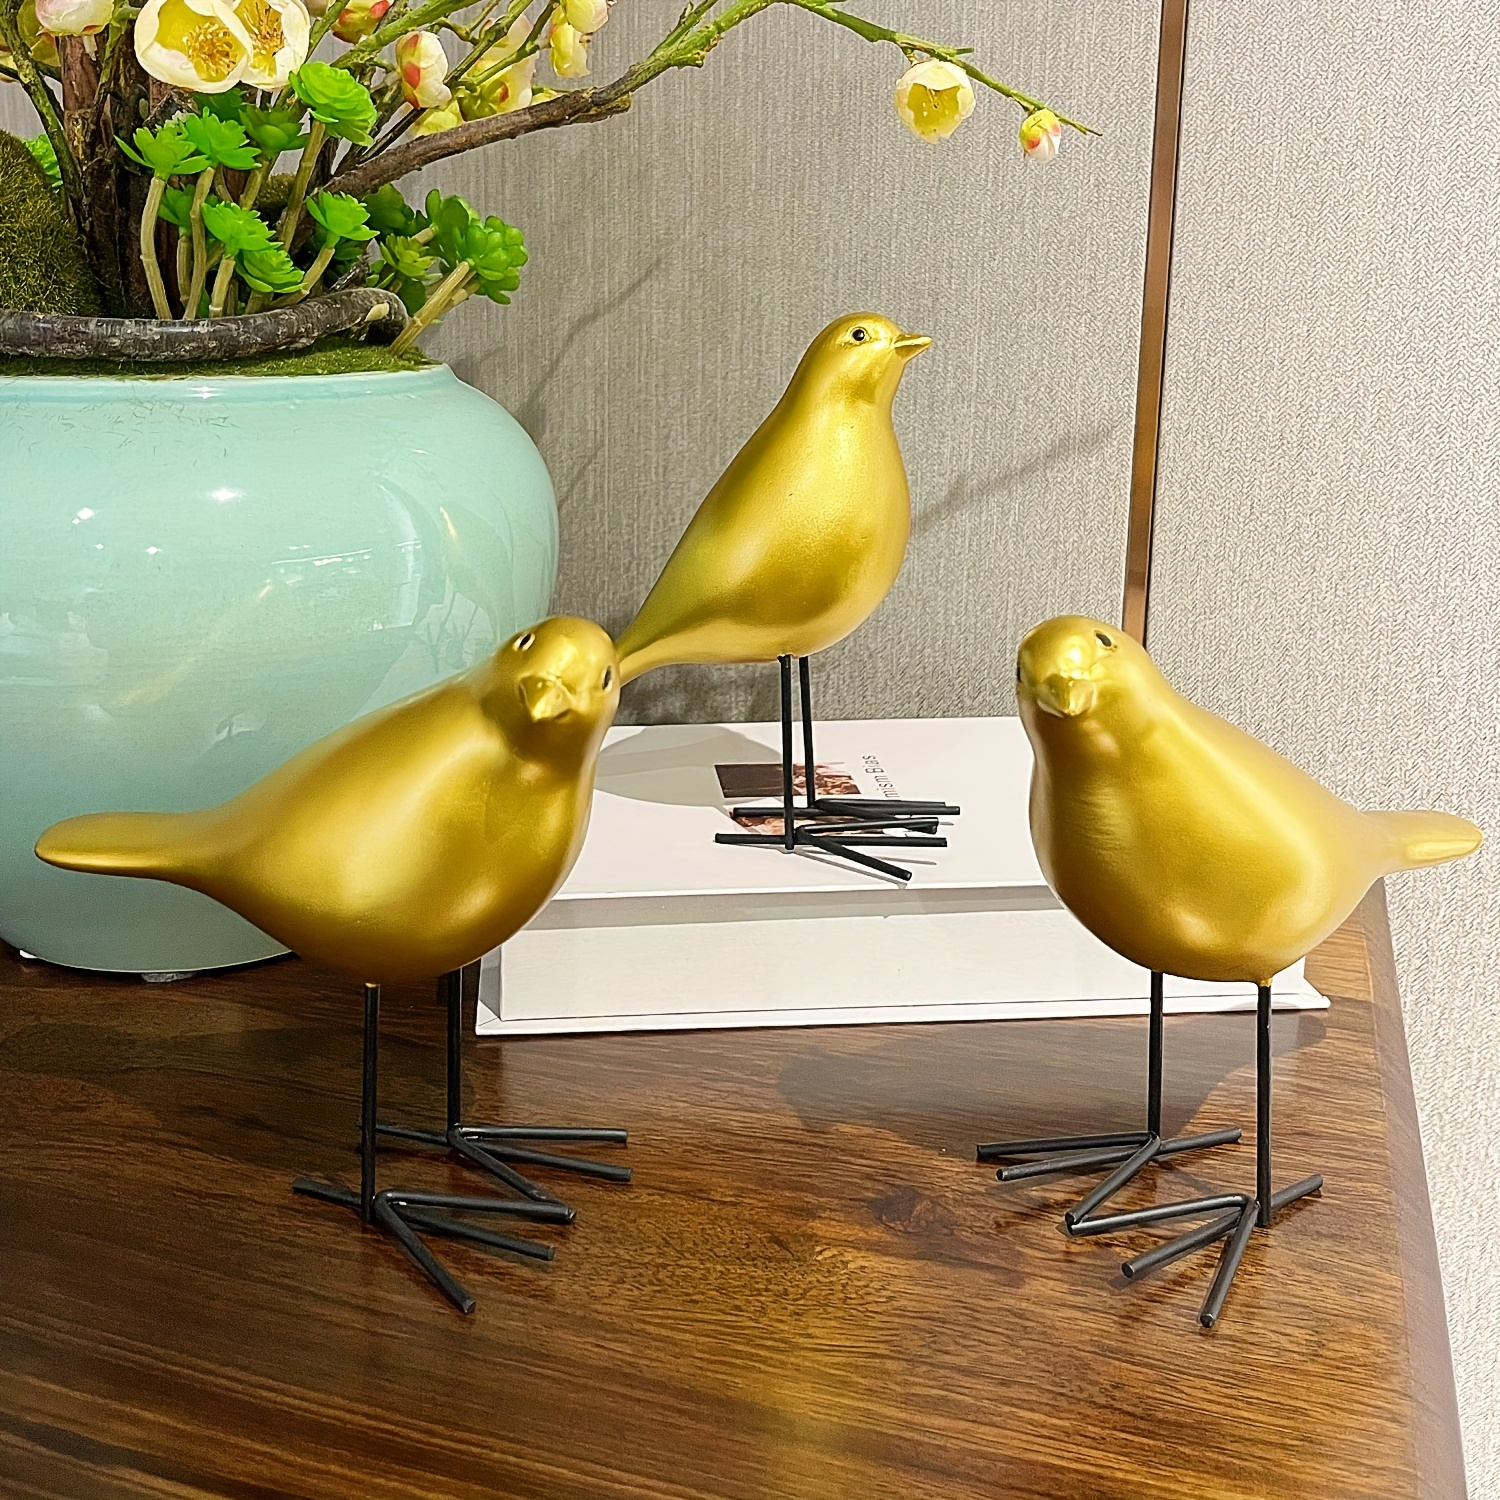 Escurreplatos dorado - Batlló Concept - Tienda decoración artesanal